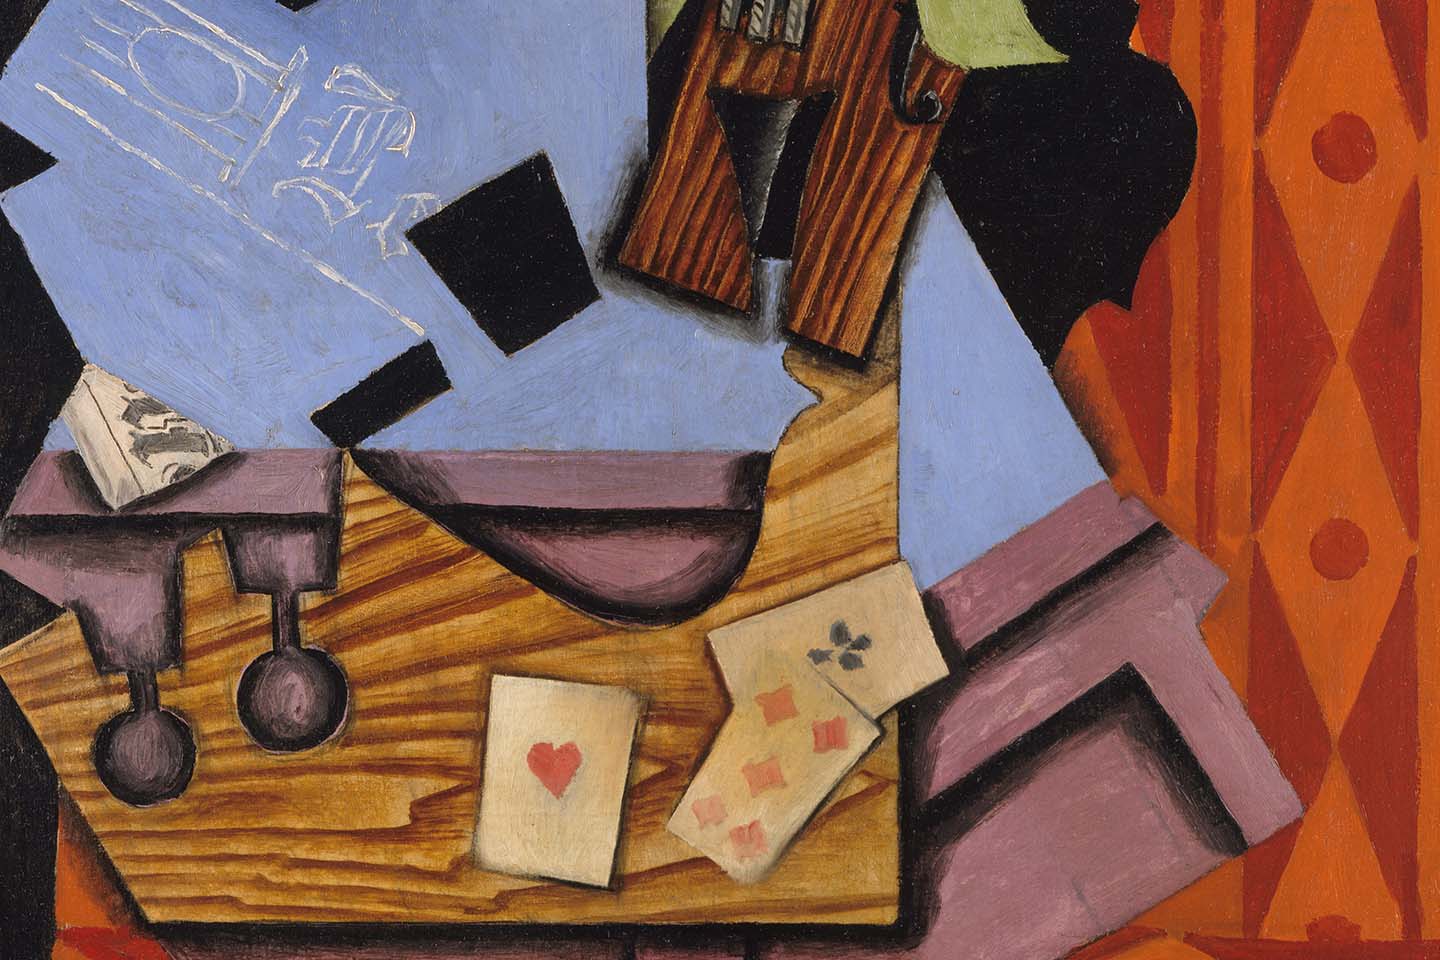 Juan Gris' cubist painting 